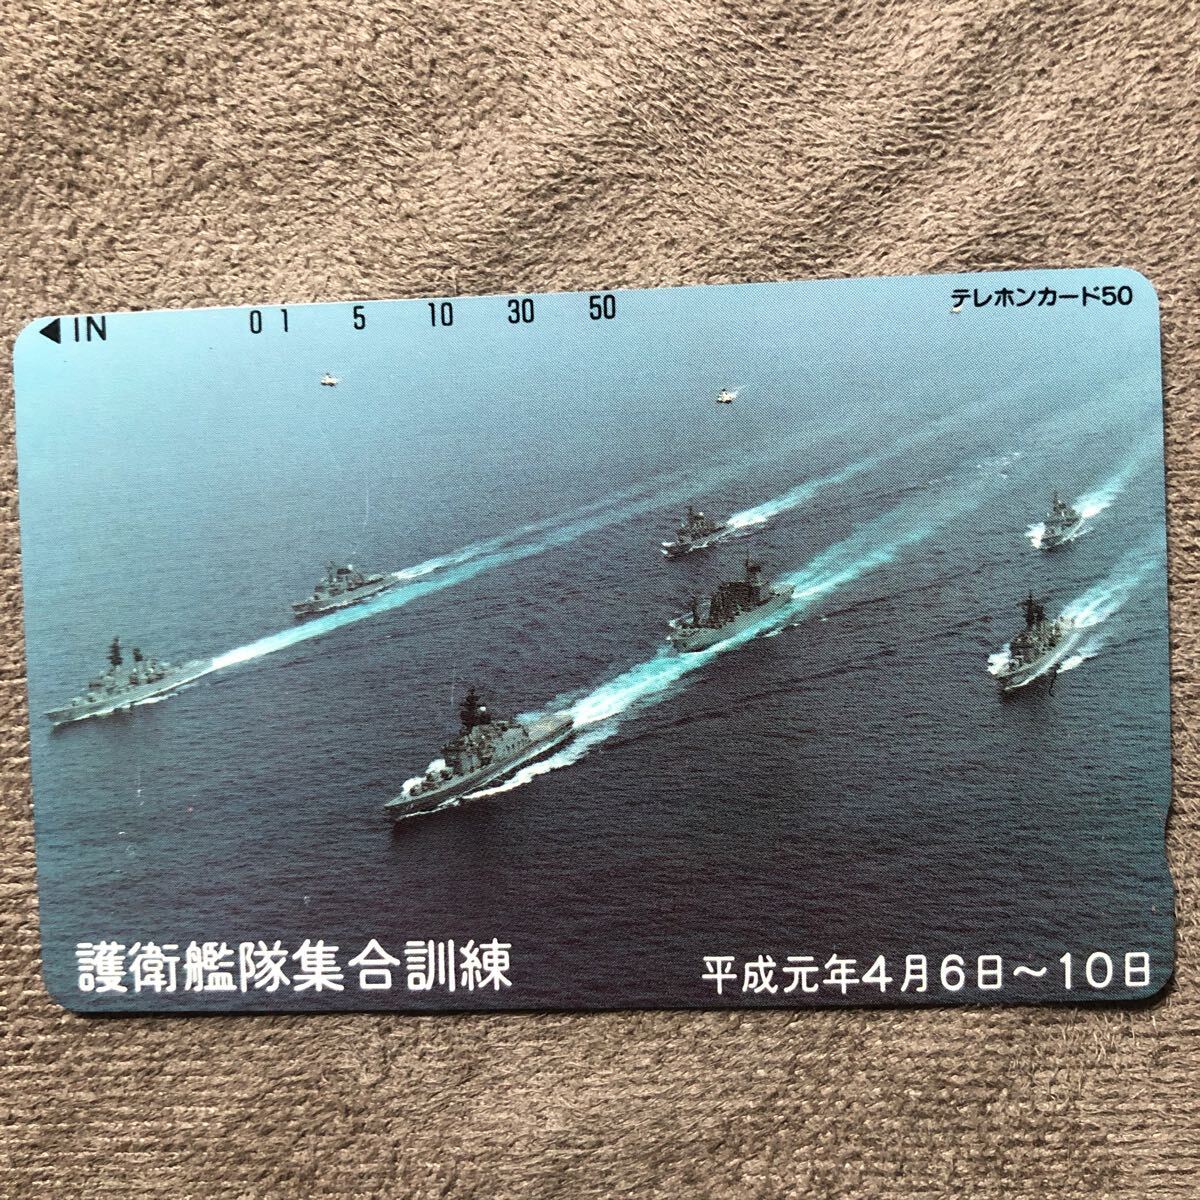 240328 艦隊 護衛艦隊集合訓練 平成元年の画像1